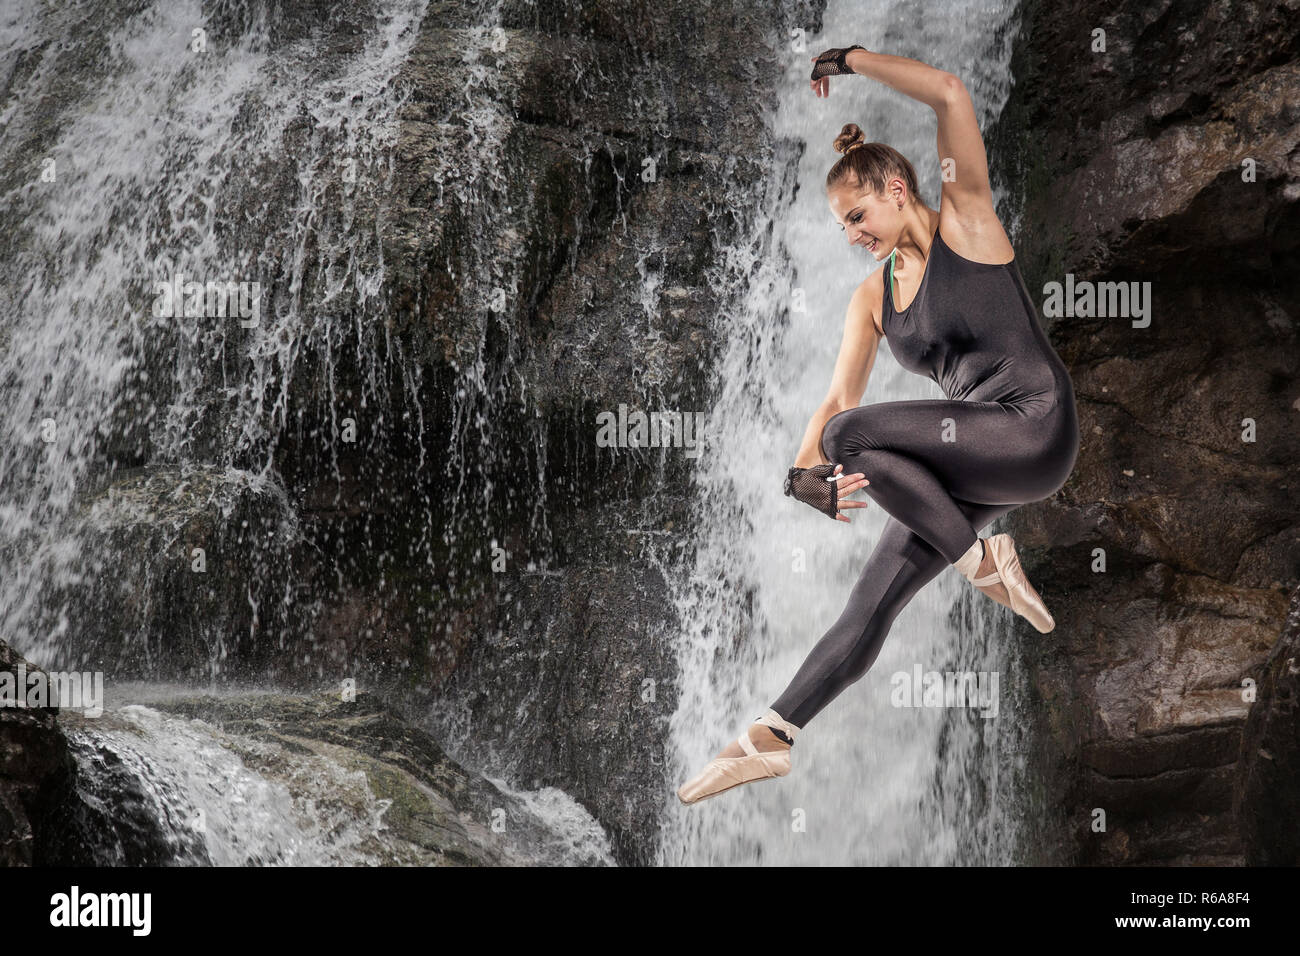 Fotomontaggio di una giovane donna saltando su una cascata Foto Stock